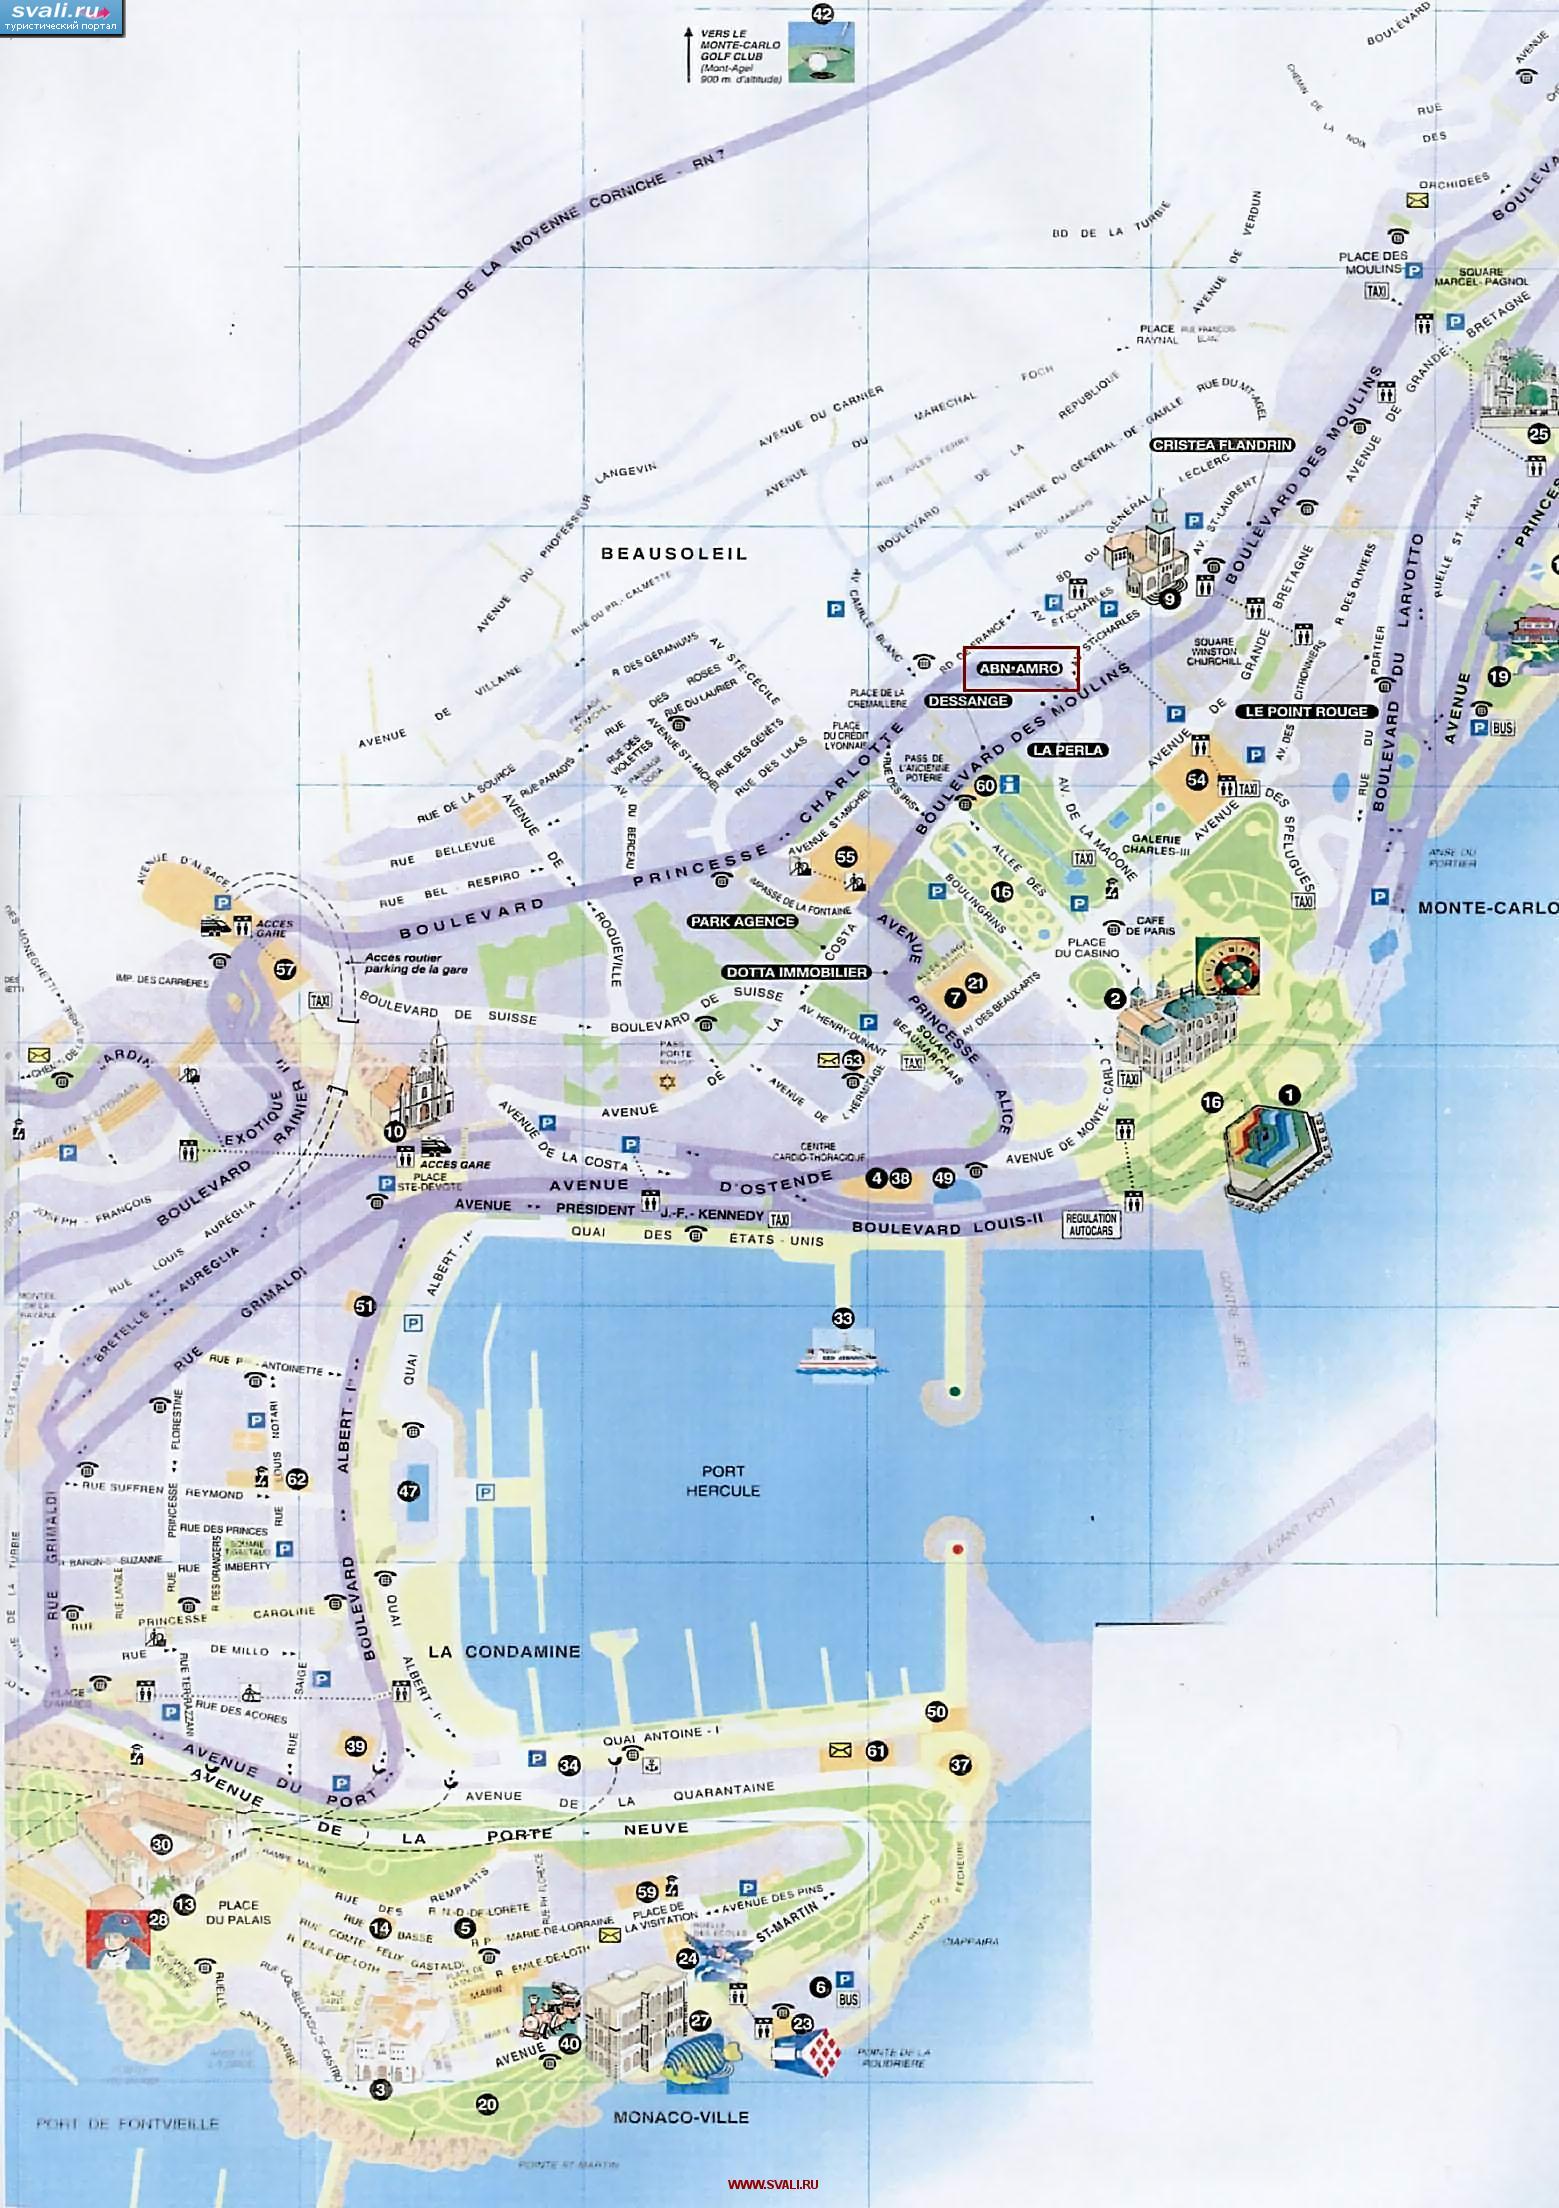 Туристическая карта Монако с указанием достопримечательностей (фр.)